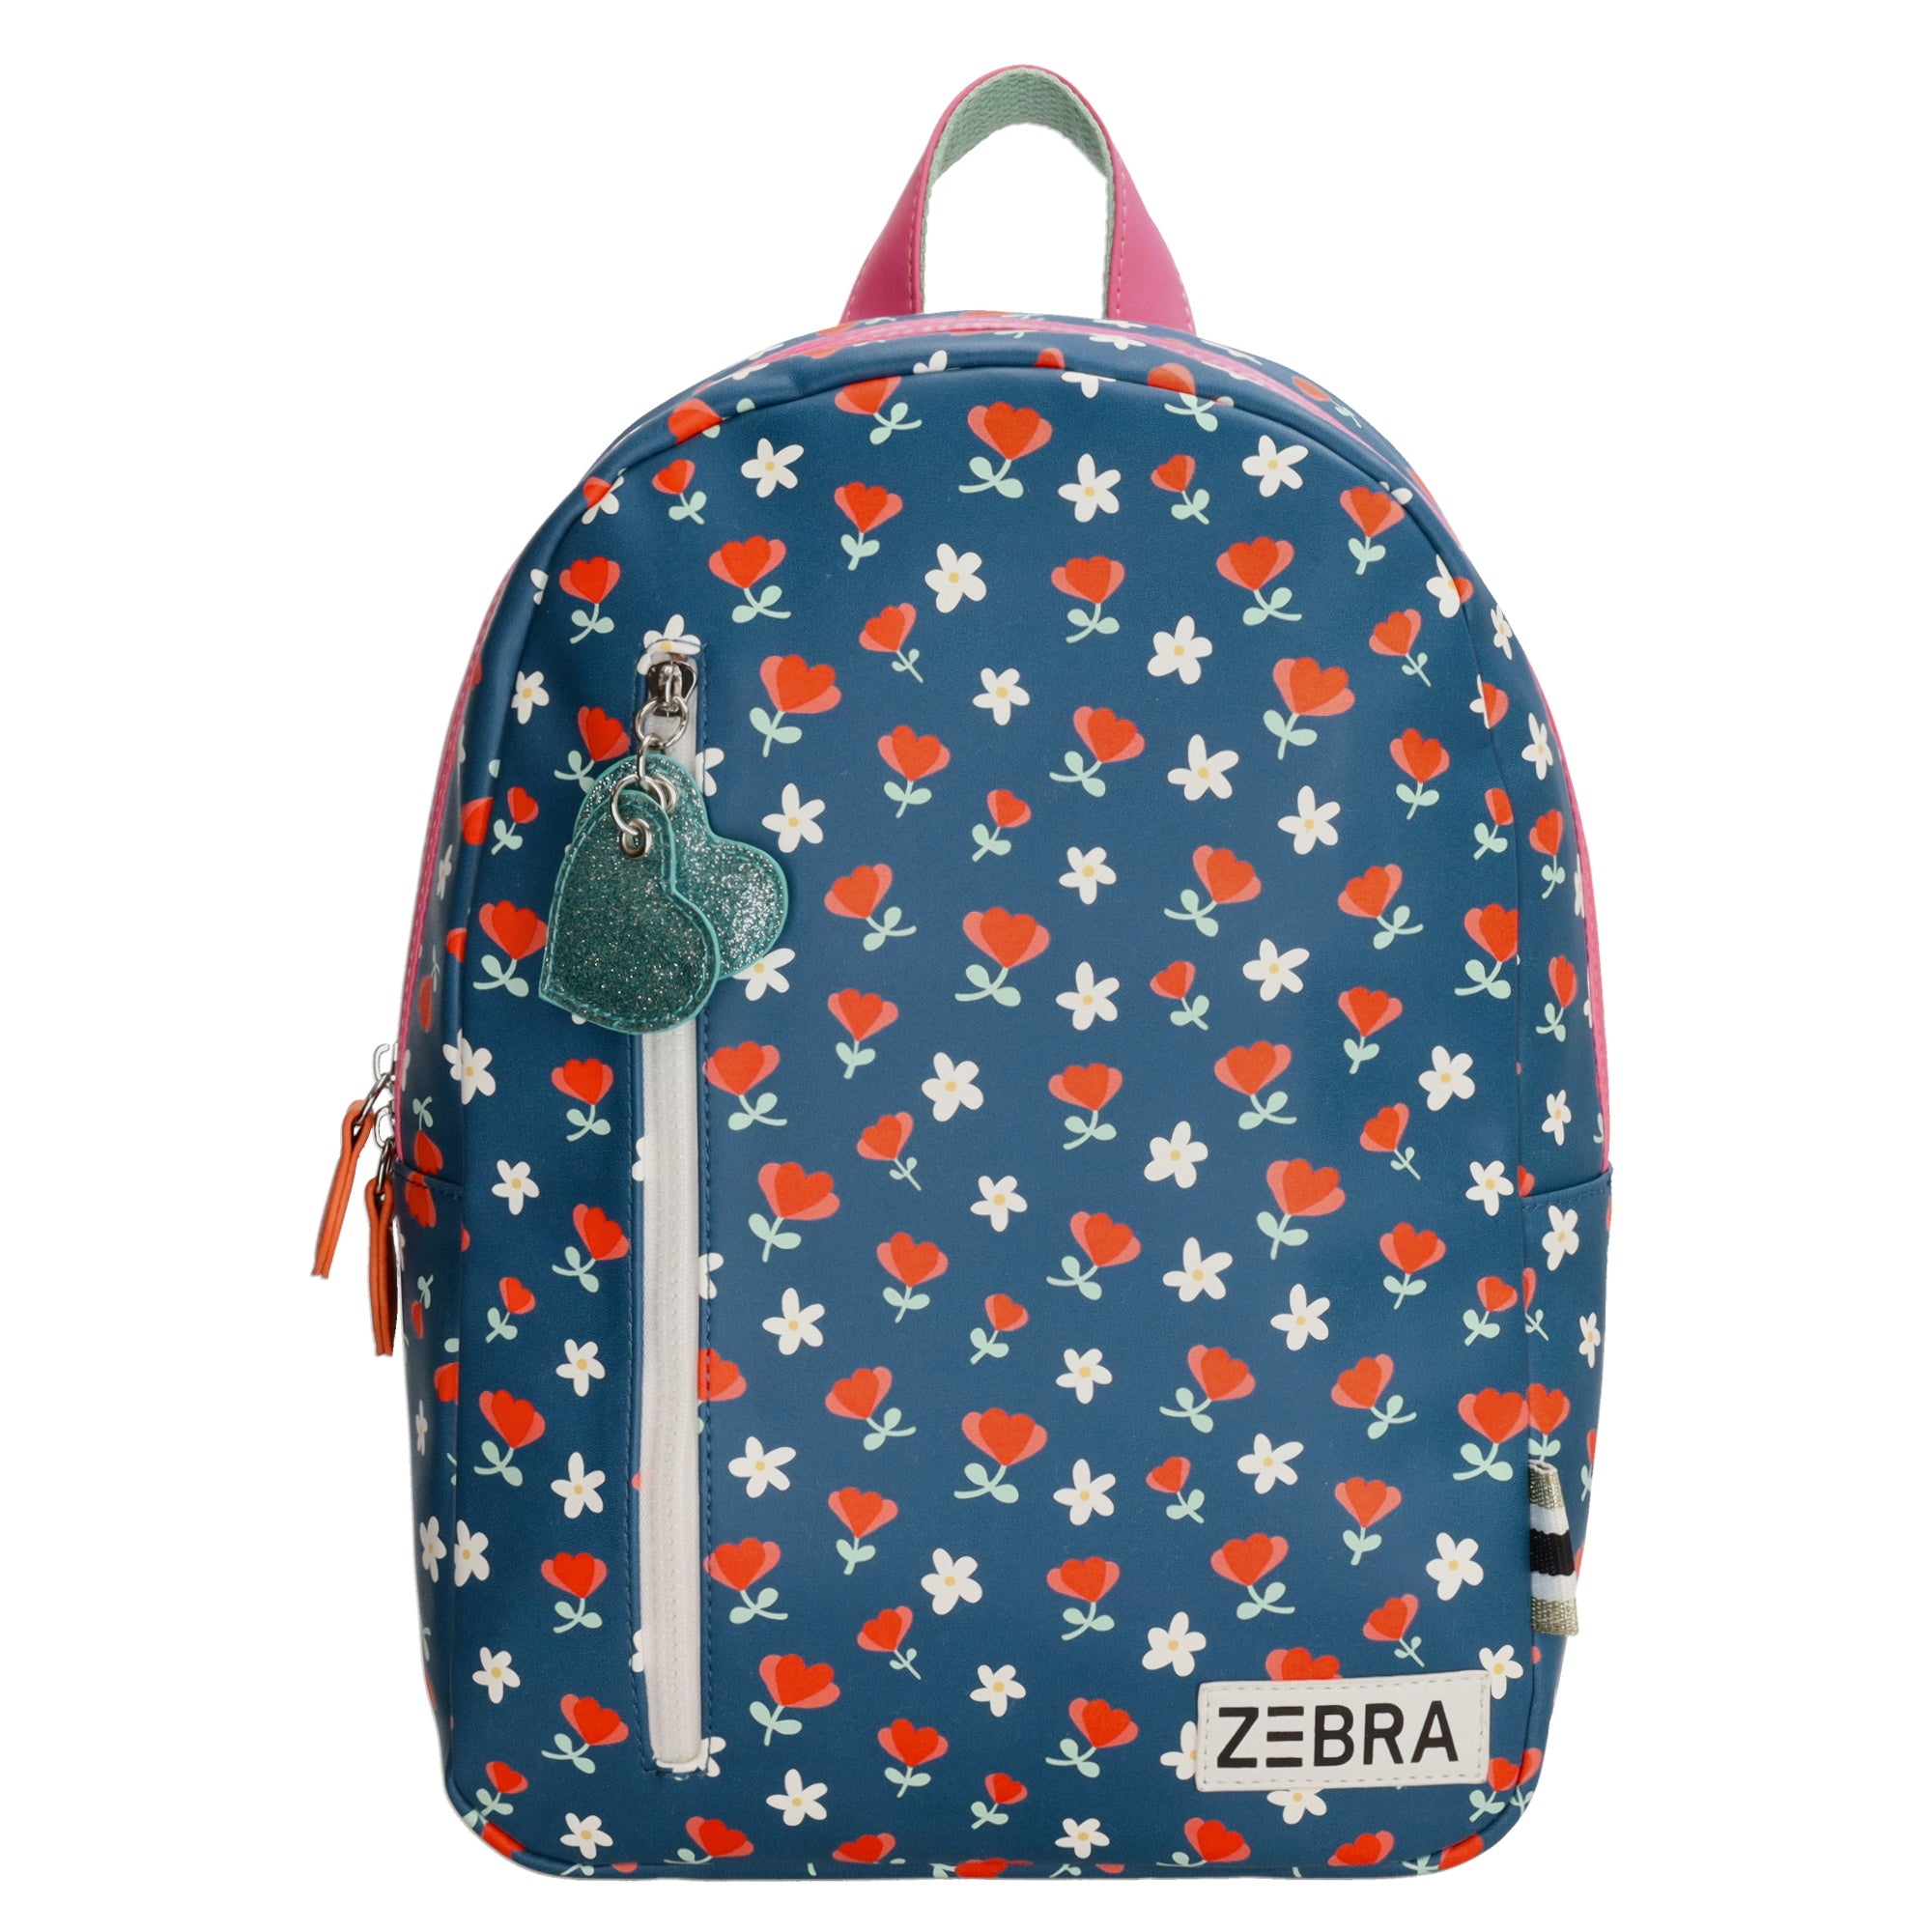 Zebra Girls Backpack - Teddy Cat